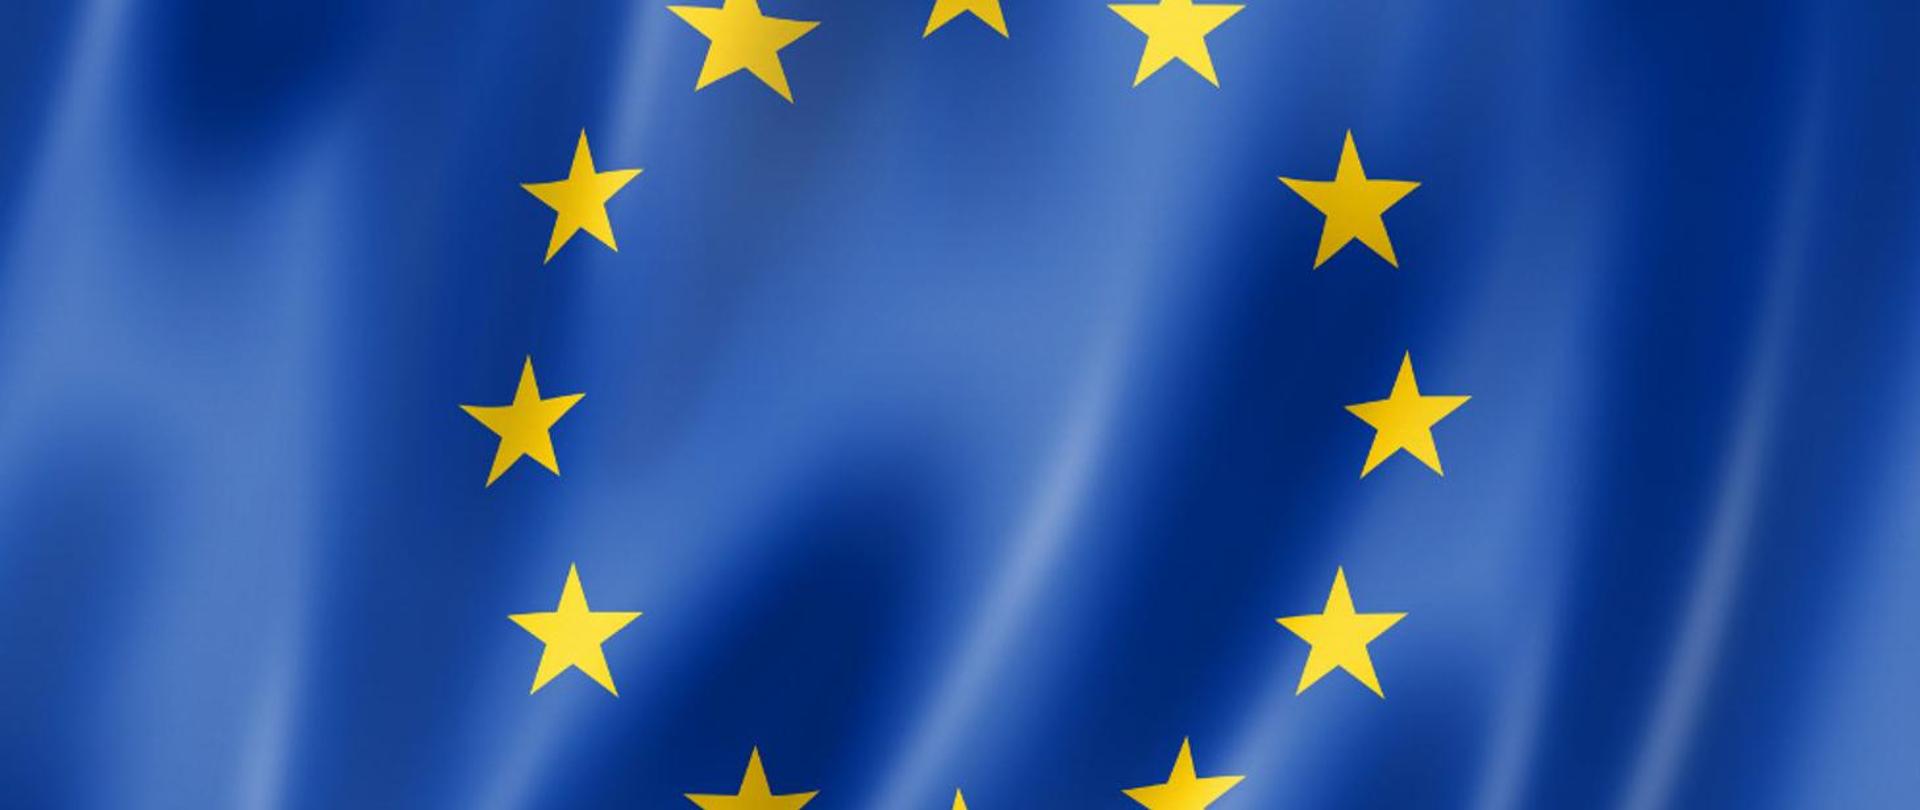 Unia Europejska 